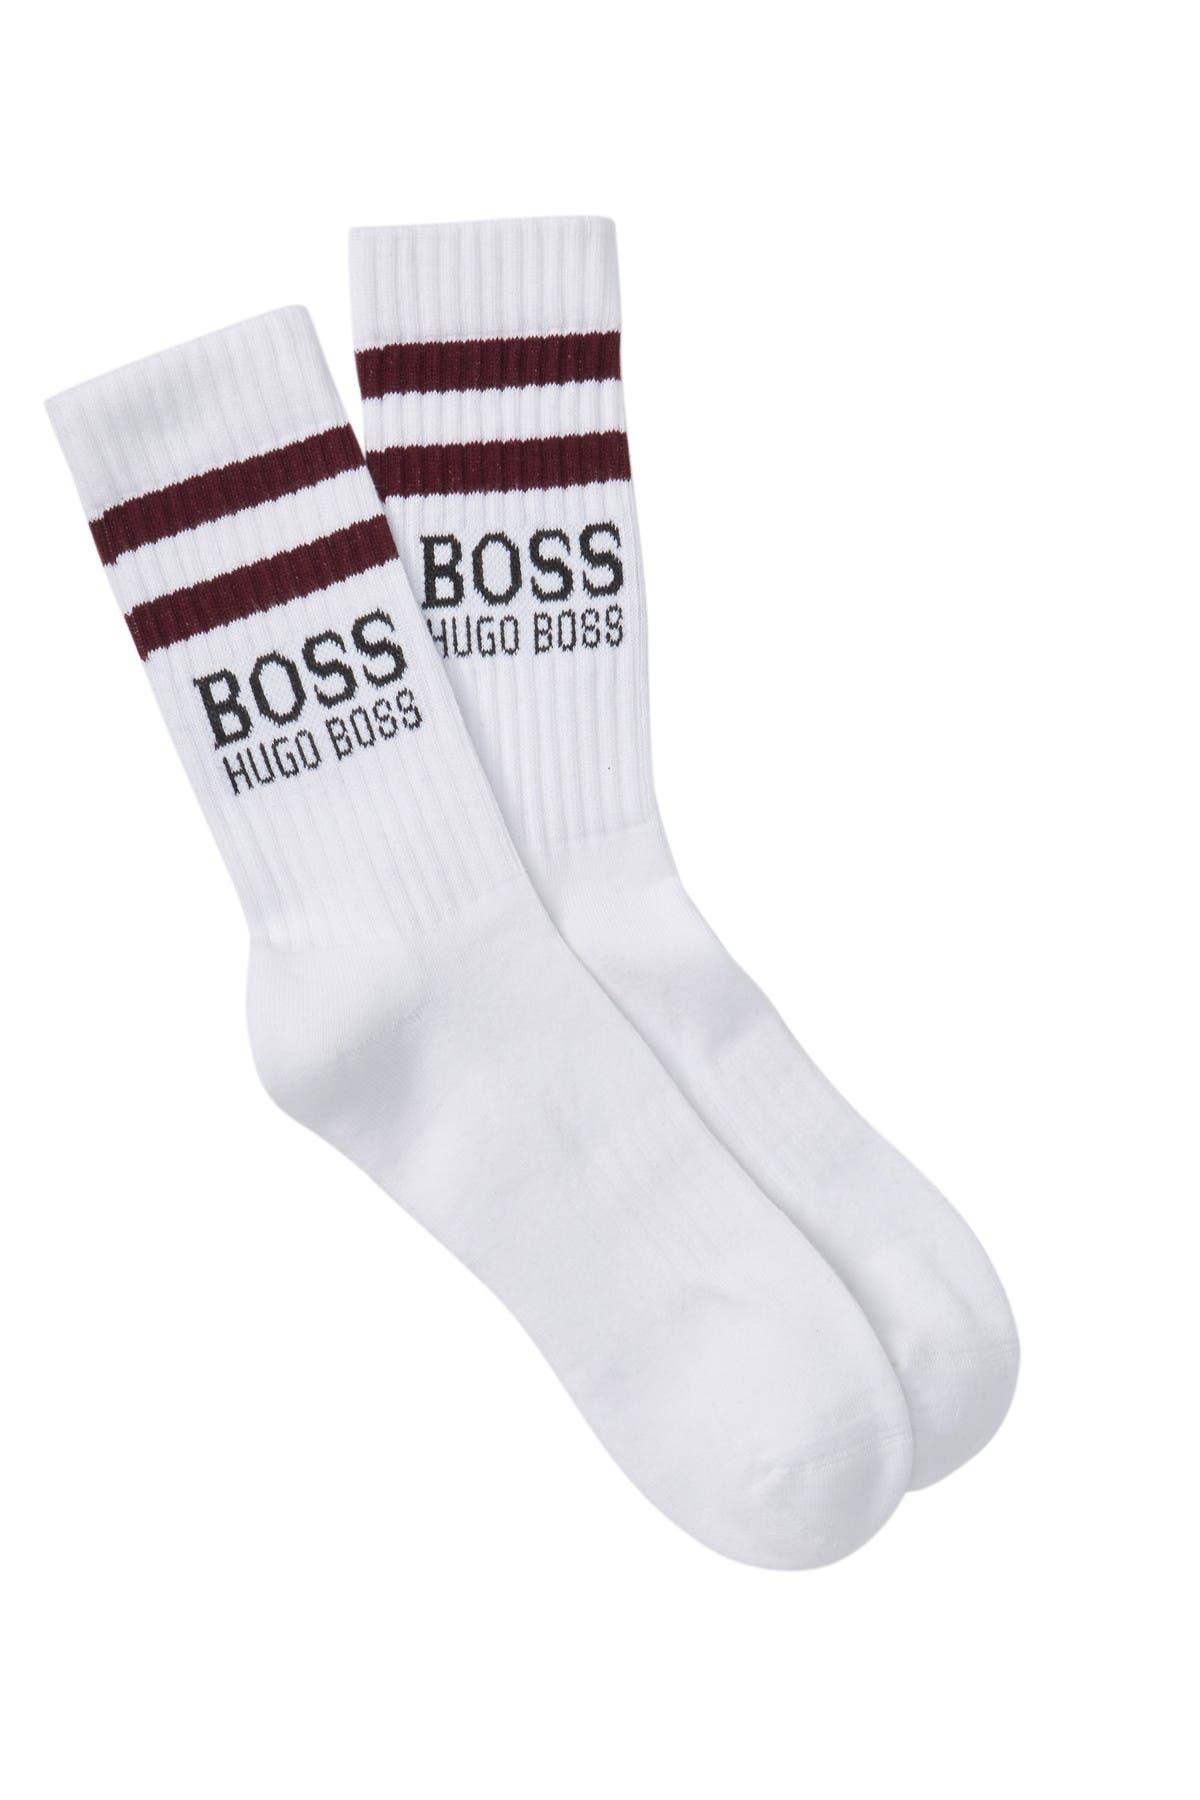 hugo boss socks nordstrom